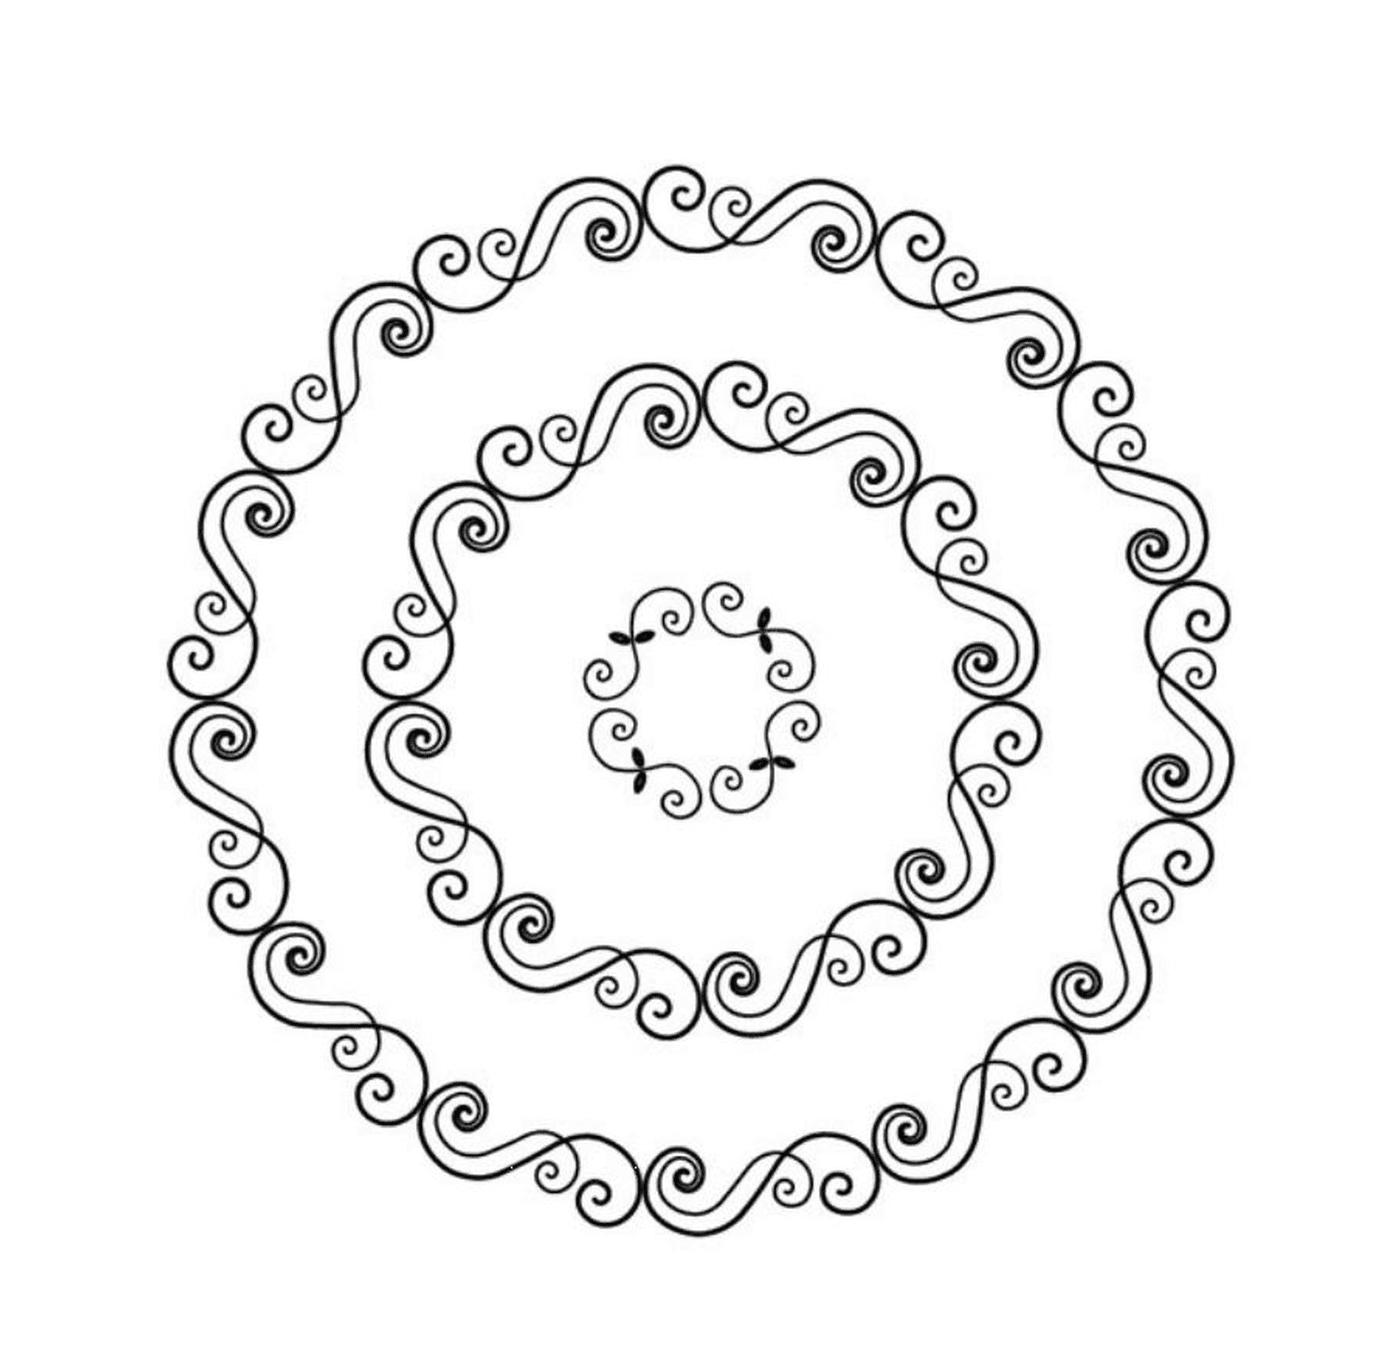   Quatre mandalas en spirale 